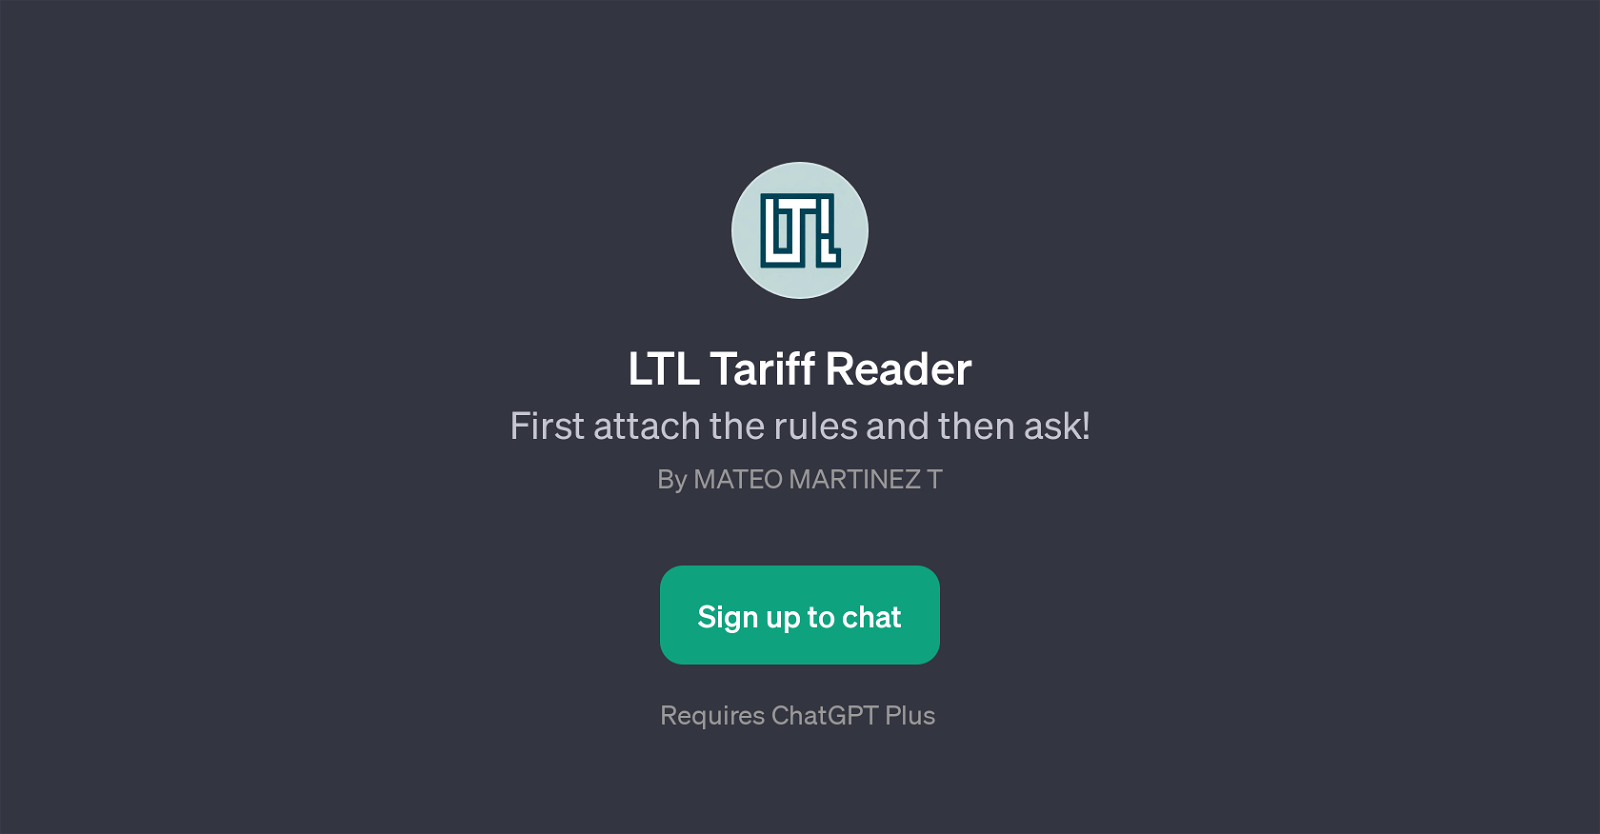 LTL Tariff Reader website